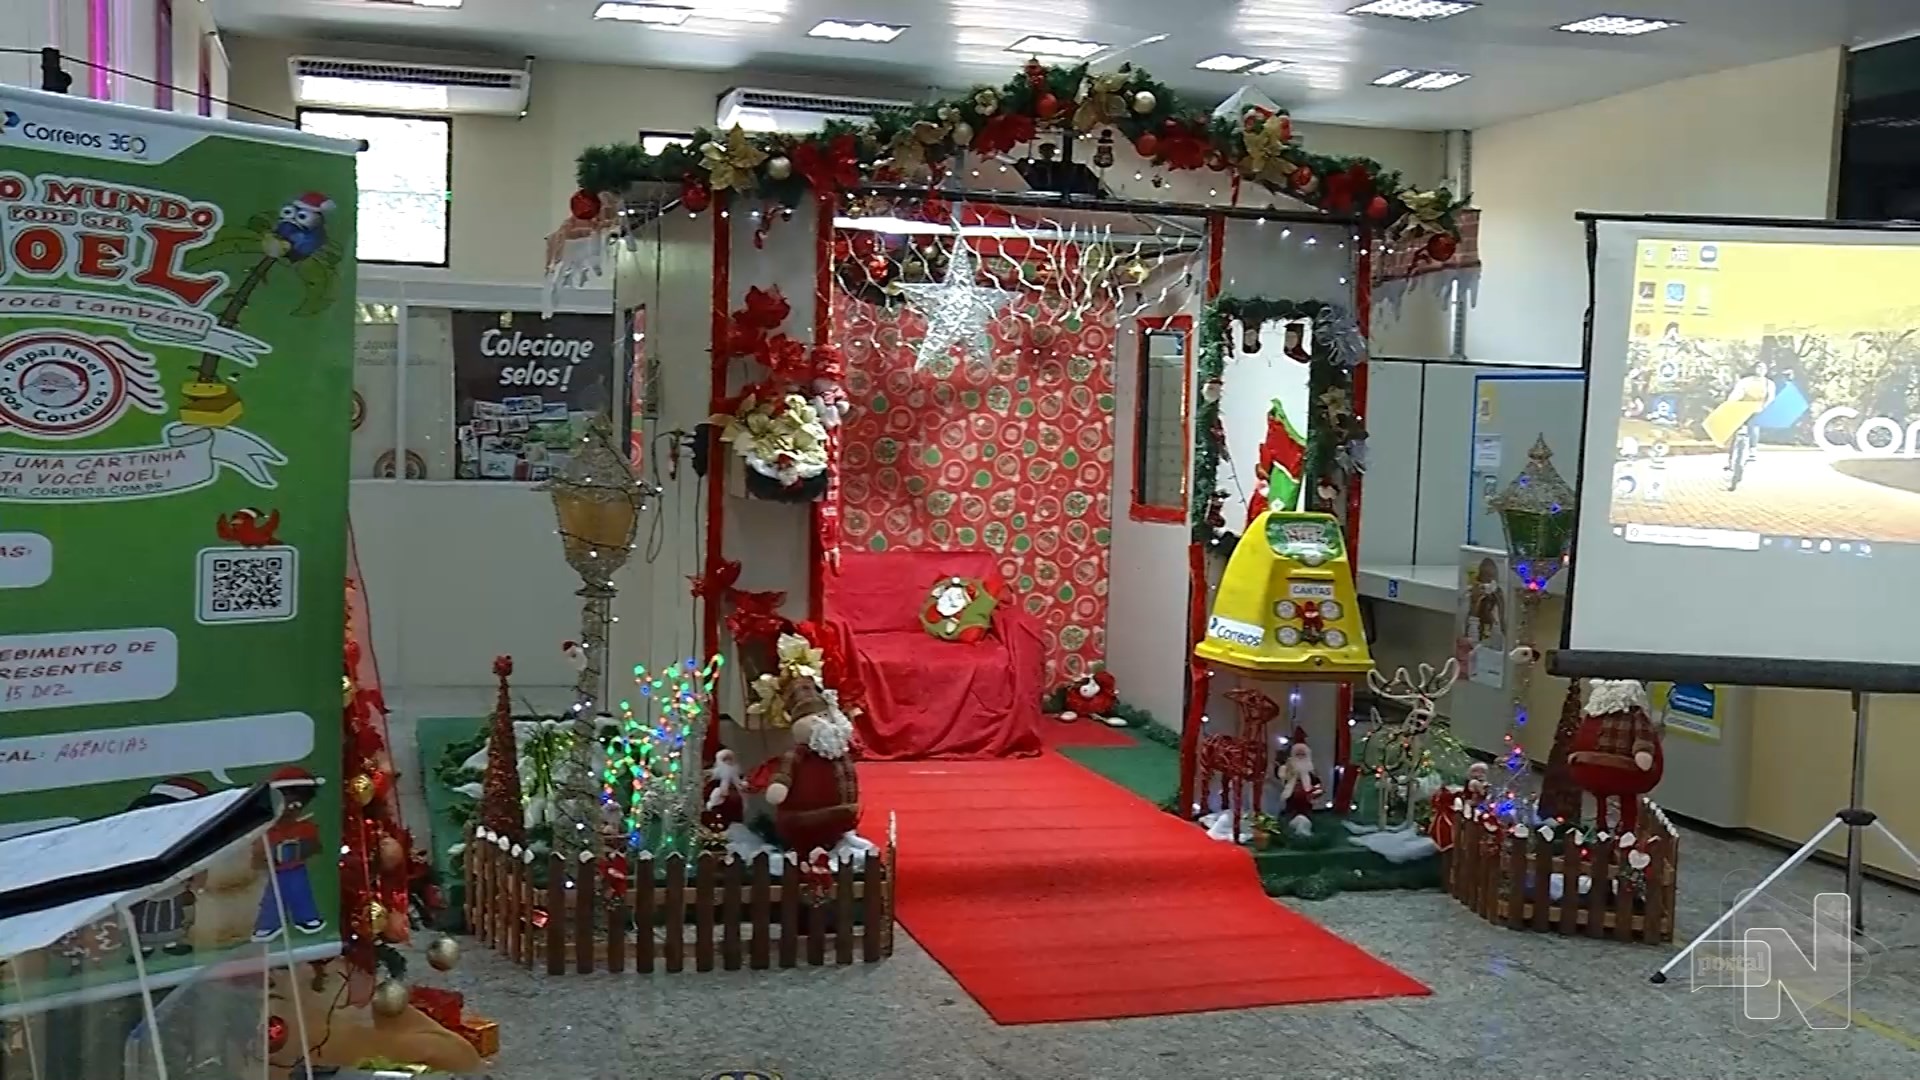 Campanha "Papai Noel dos Correios 2023" é lançada nessa semana em Manaus – Foto: Reprodução/TV Norte Amazonas